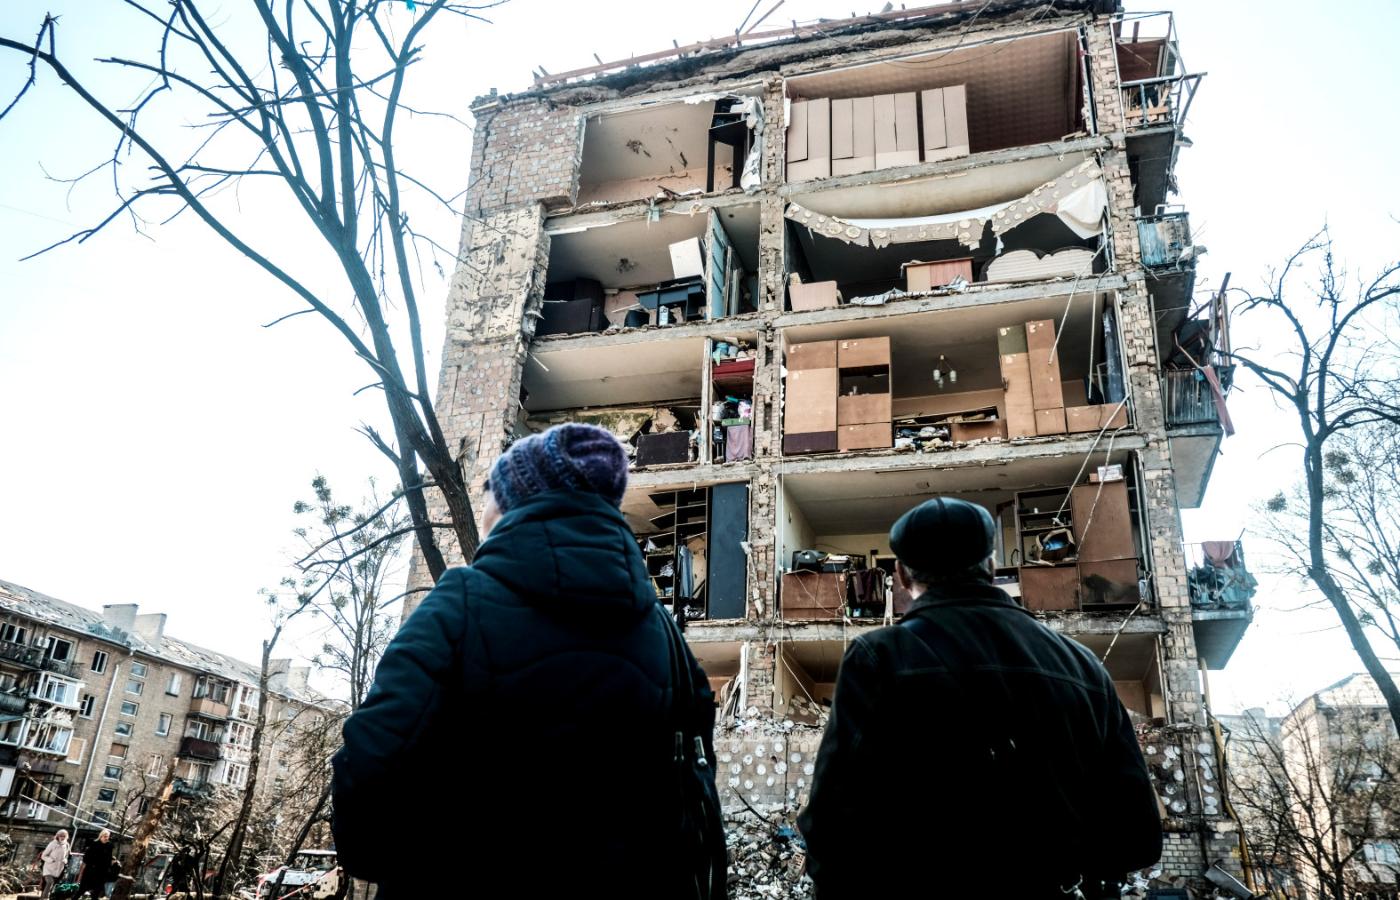 Kijów, kolejny atak rosyjski na budynki mieszkalne, 19 marca 2022 r.